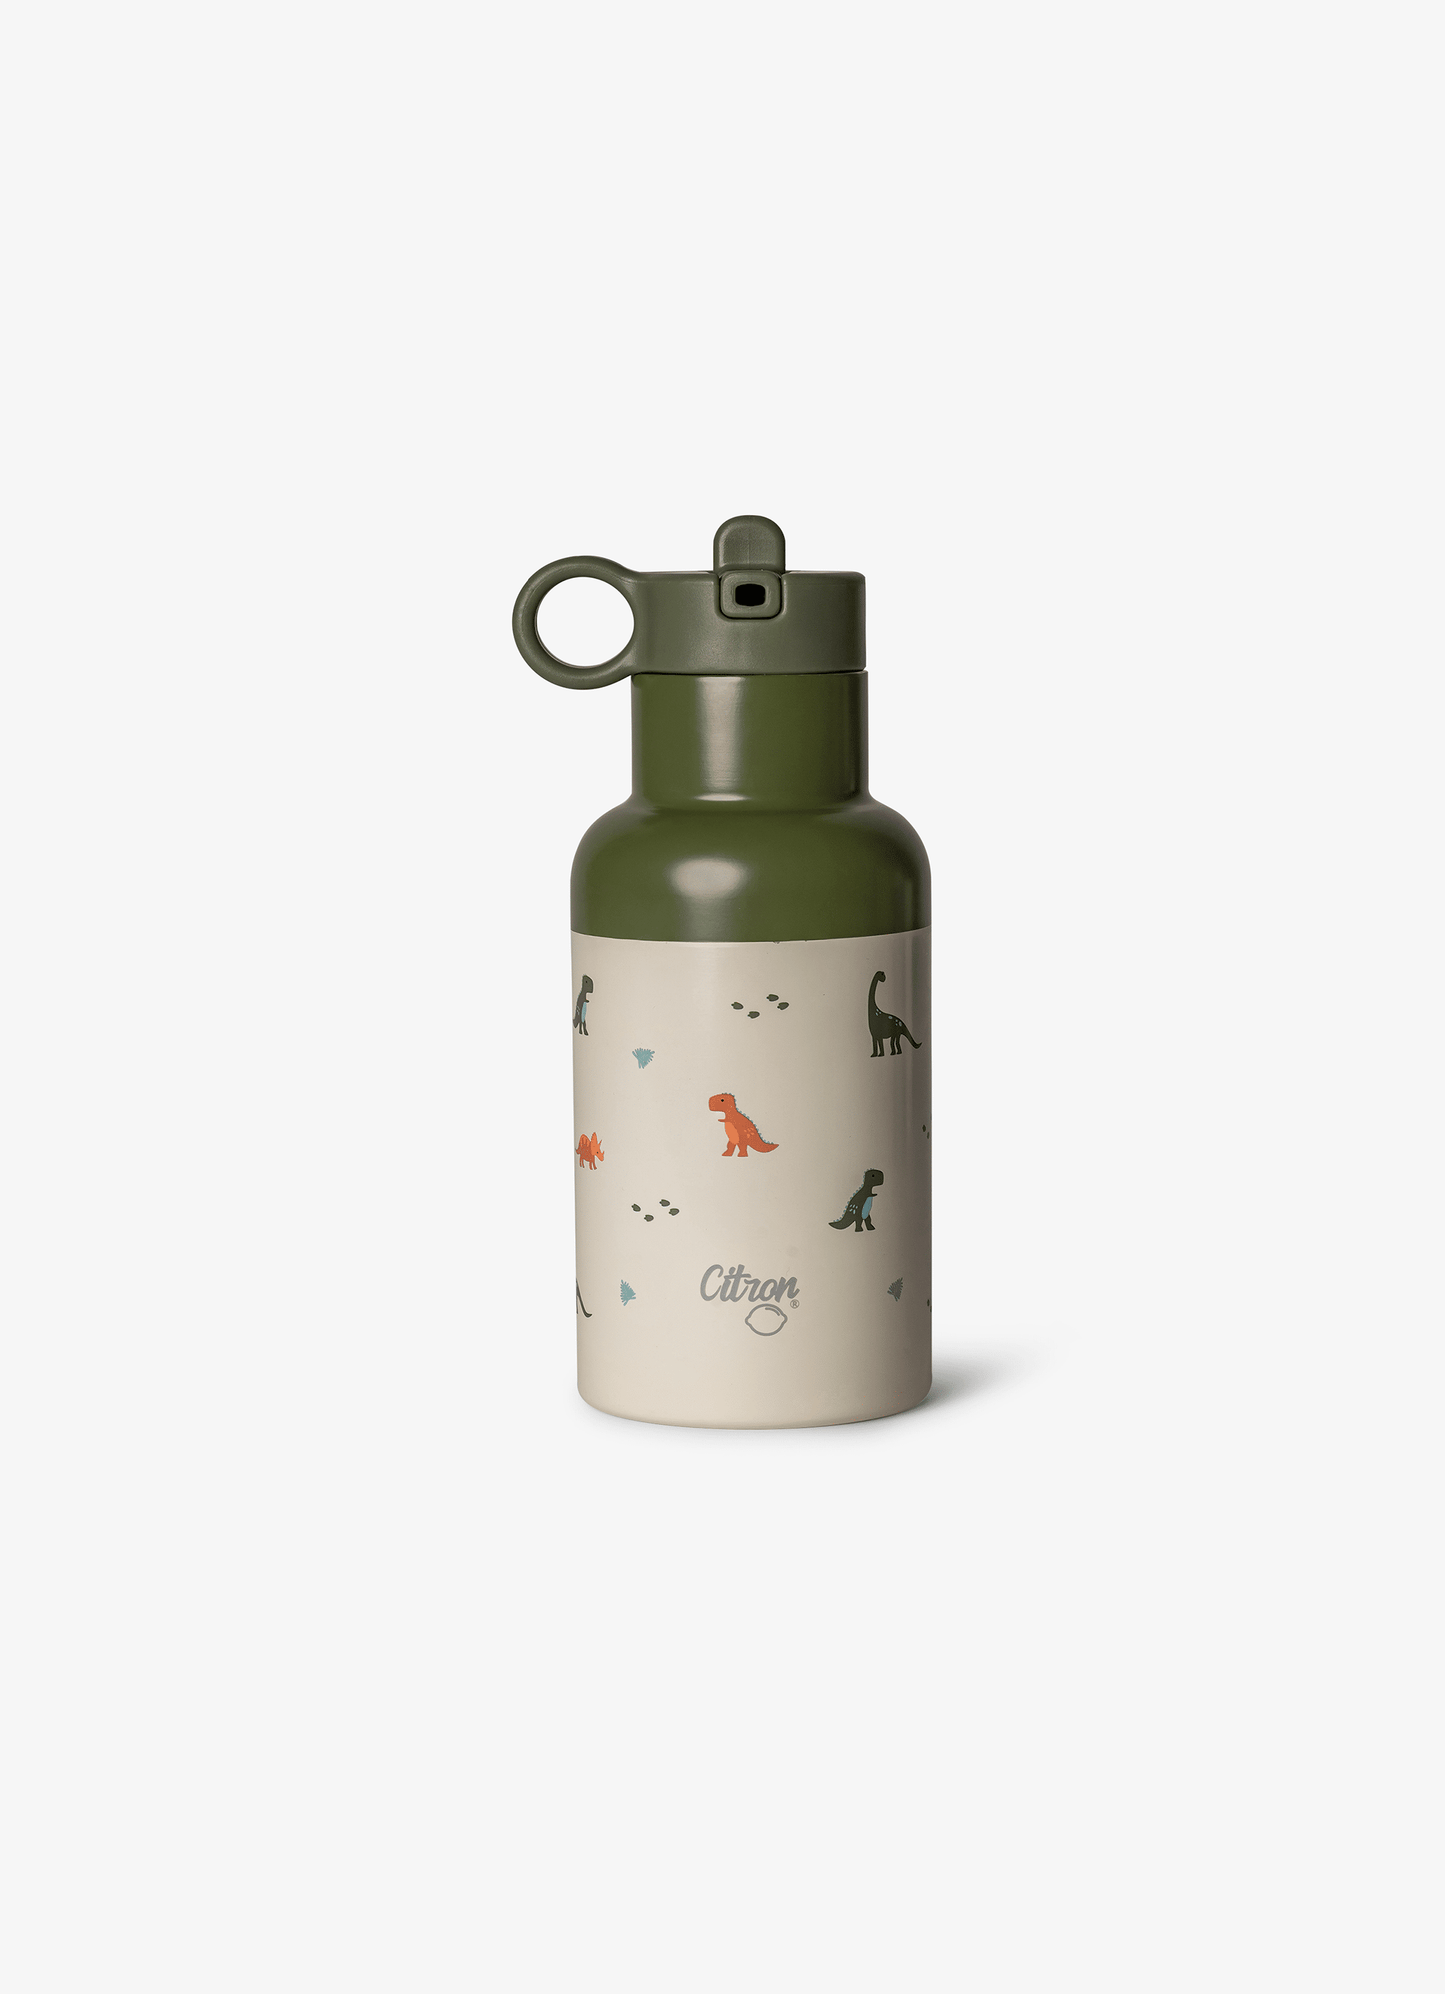 Water Bottle - 350ml - Dino Green